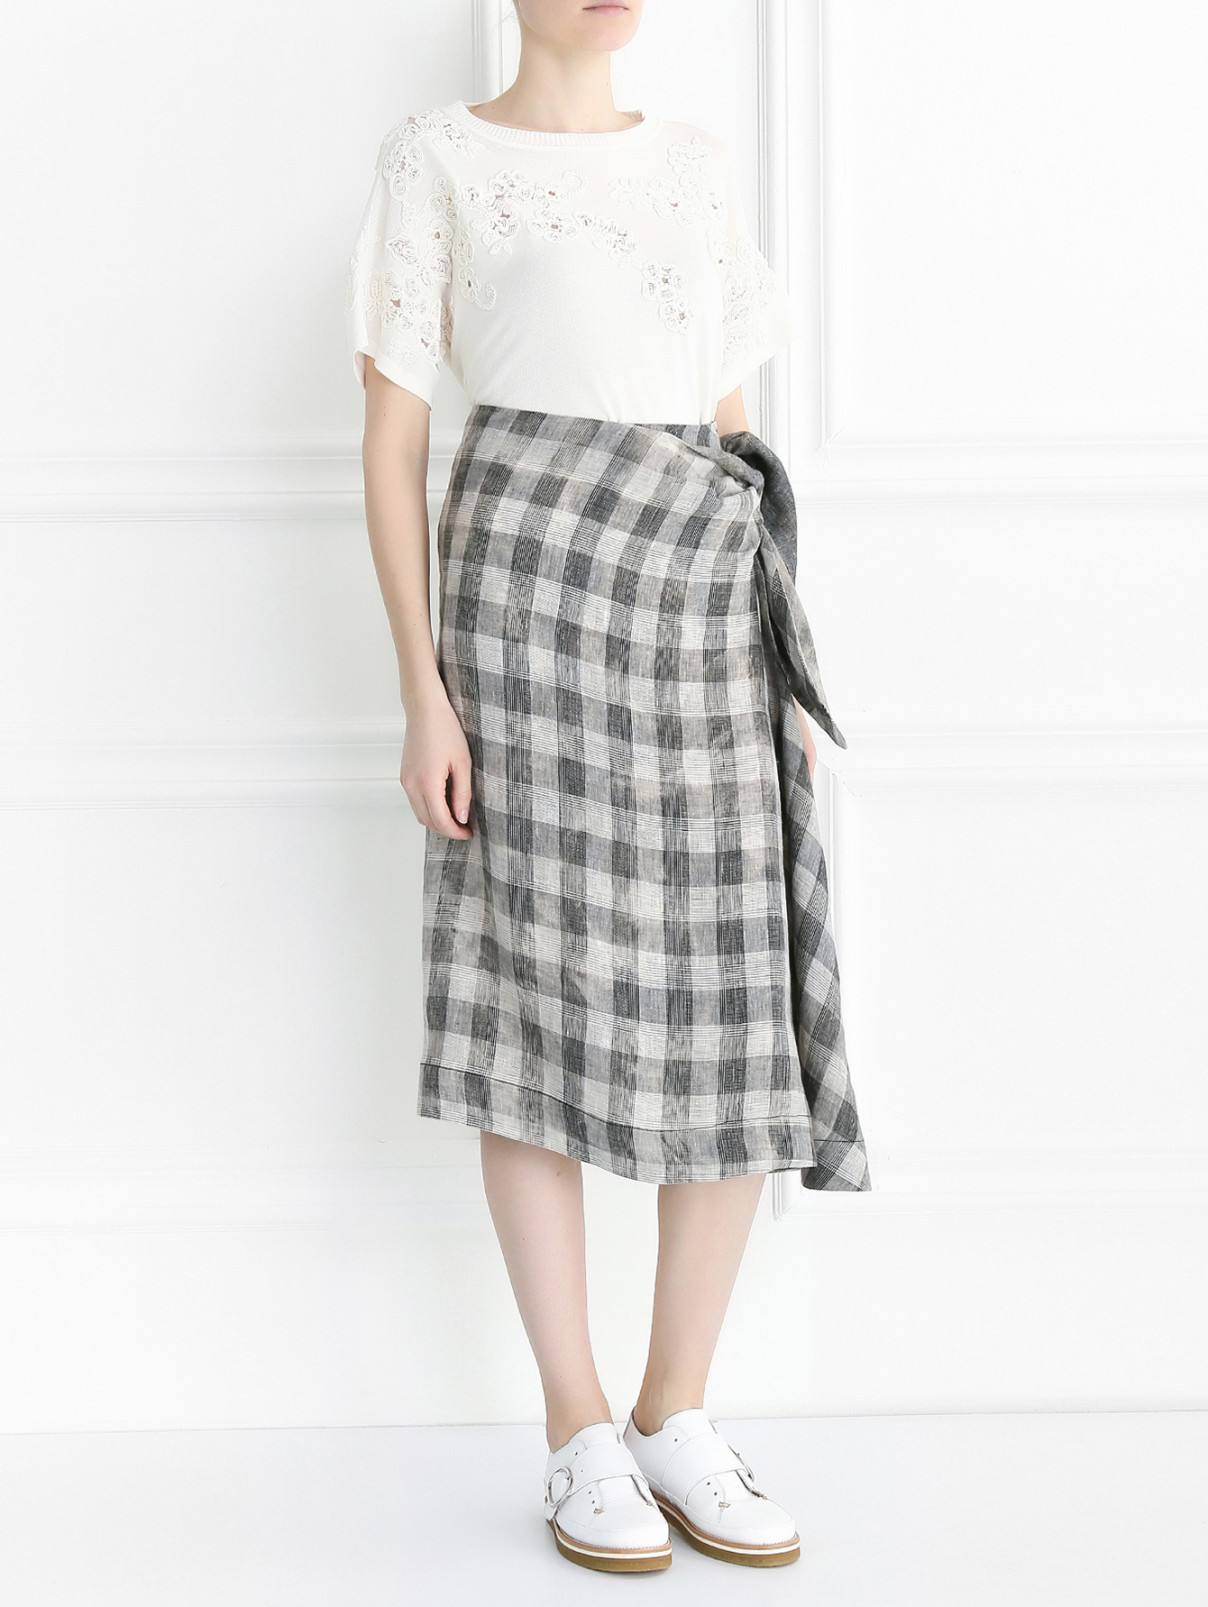 Асимметричная юбка из льна с завязками Antonio Marras  –  Модель Общий вид  – Цвет:  Серый